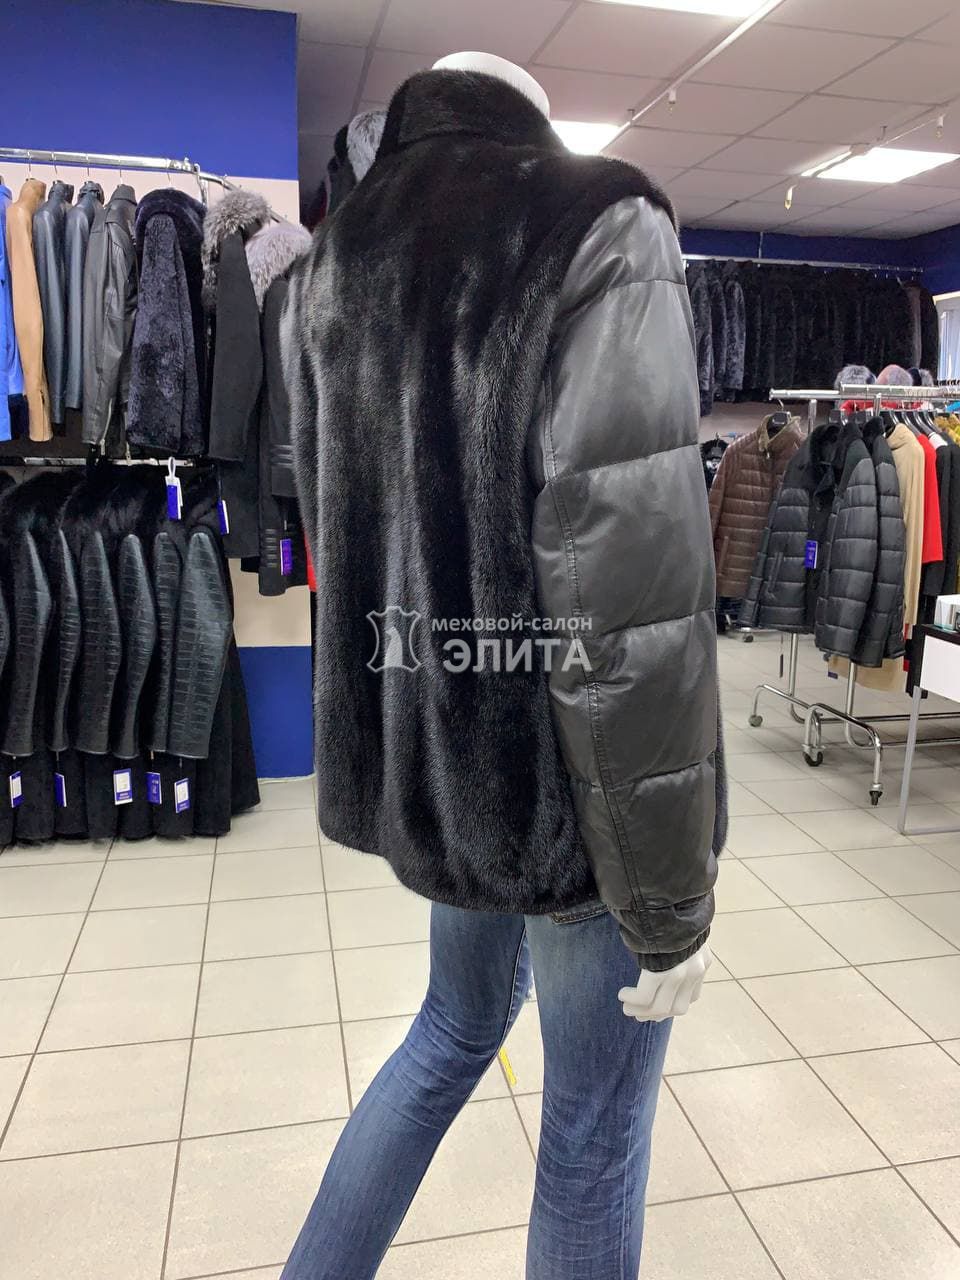 куртка из норки отделка кожа S-02, р-р 52-54, цена 107500 рублей в интернет-магазине кожи и меха ЭЛИТА. Вид 2